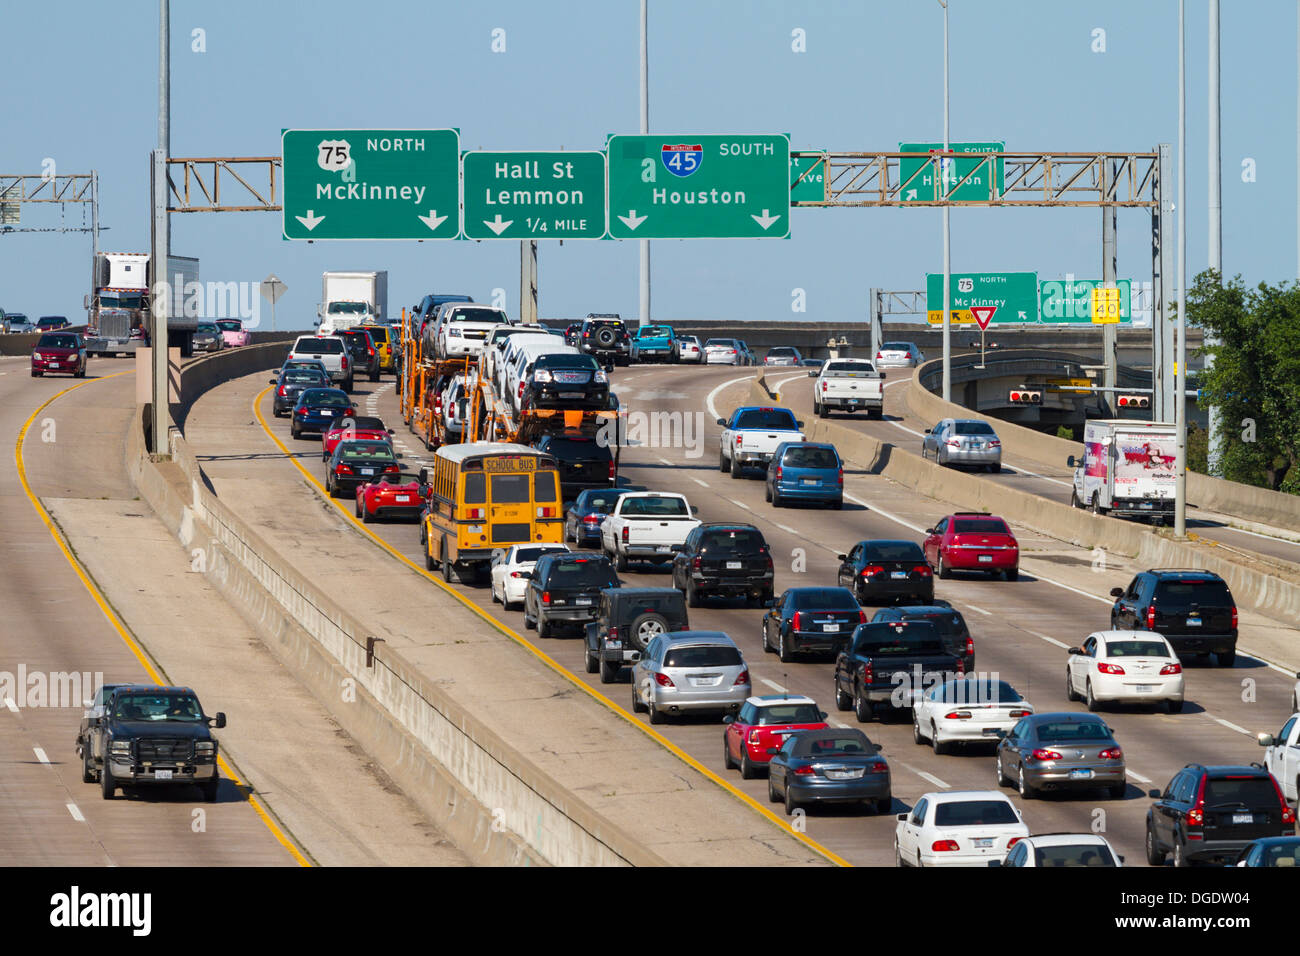 Un fort trafic sur l'autoroute 45 Autoroute Autoroute Central Dallas Texas USA Banque D'Images